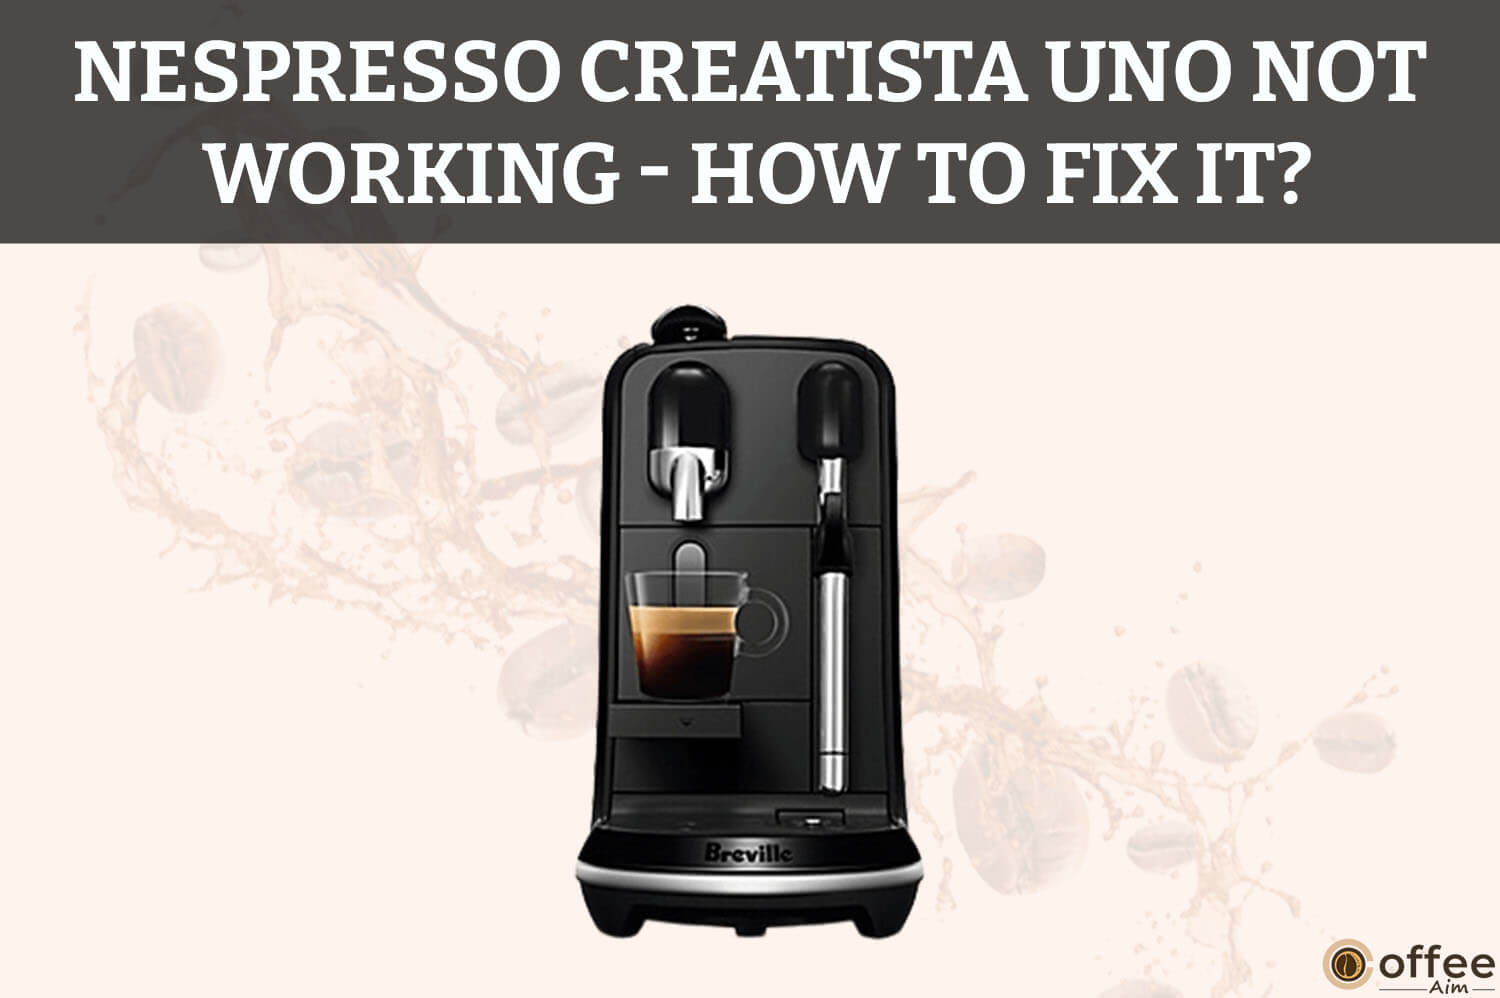 Nespresso Creatista Not Working - How to Fix